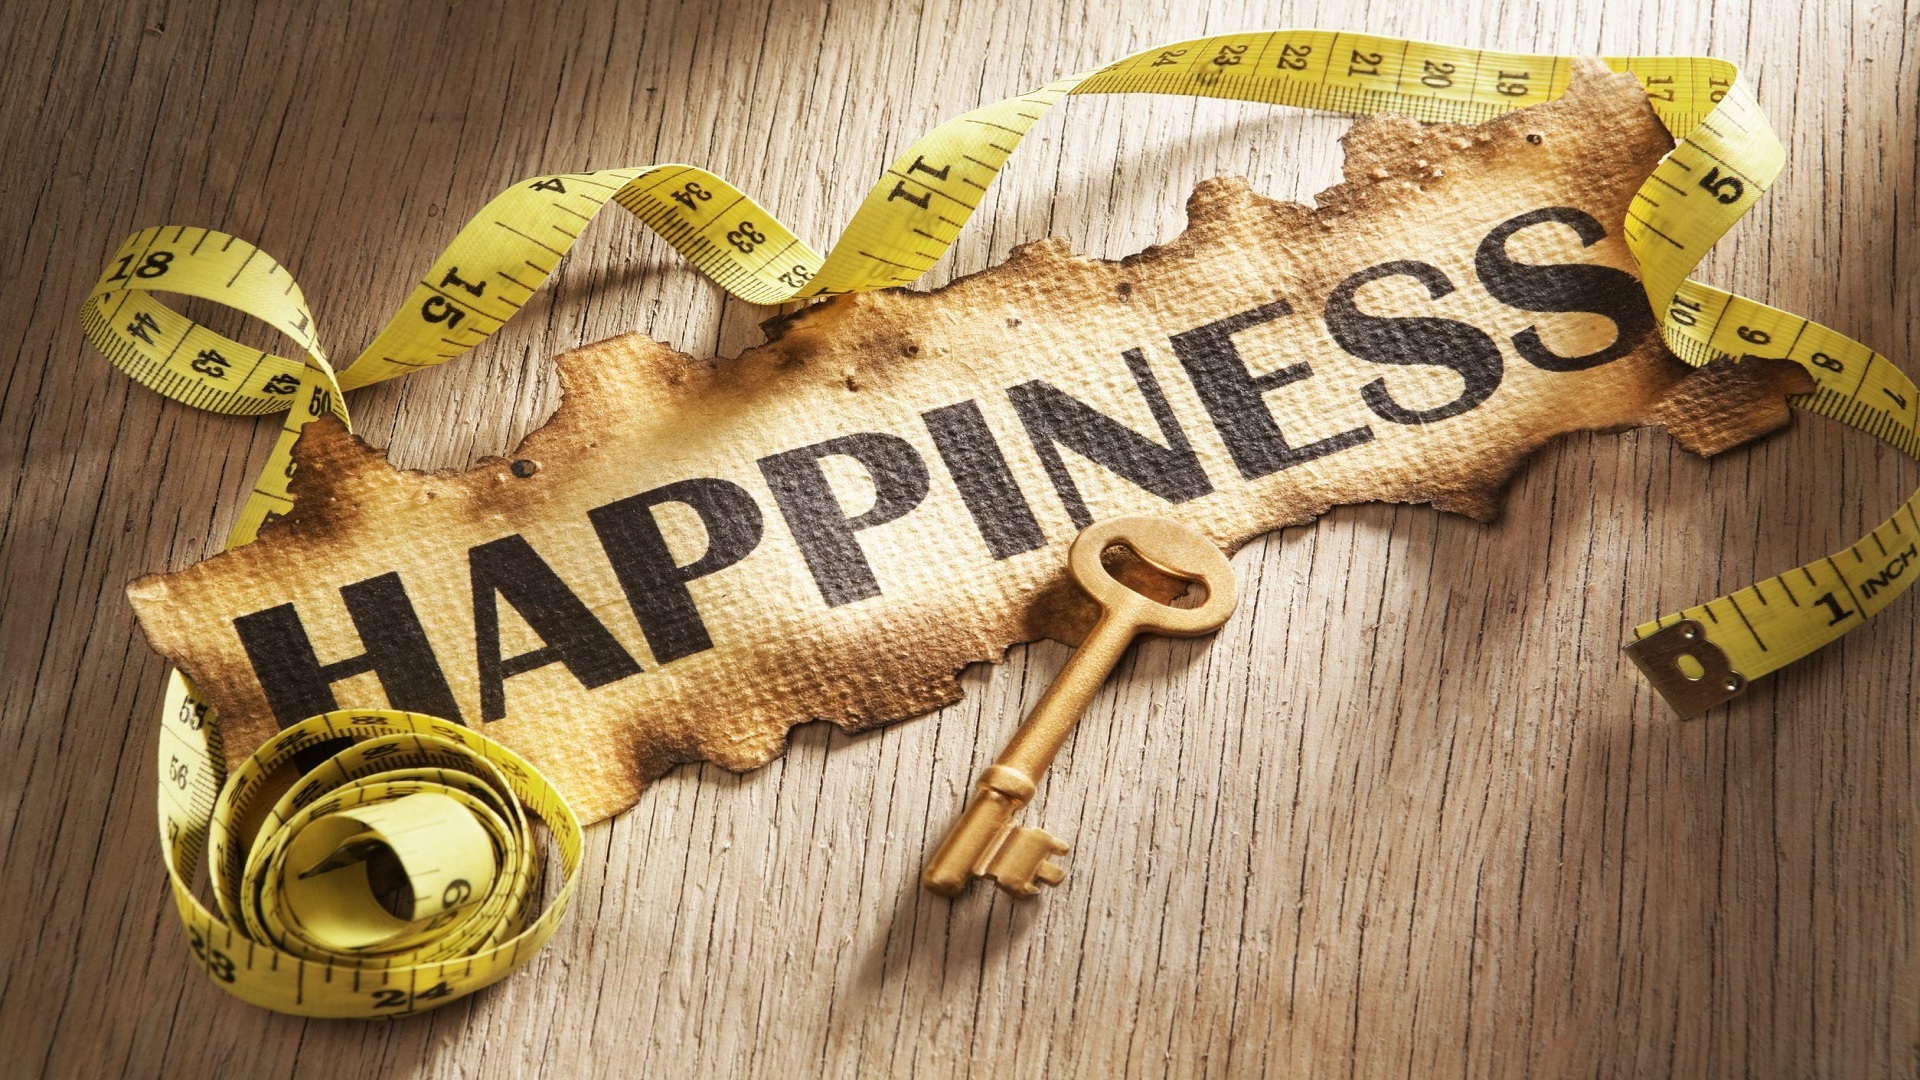 Οι τύποι της ευτυχίας και τι αντιπροσωπεύουν